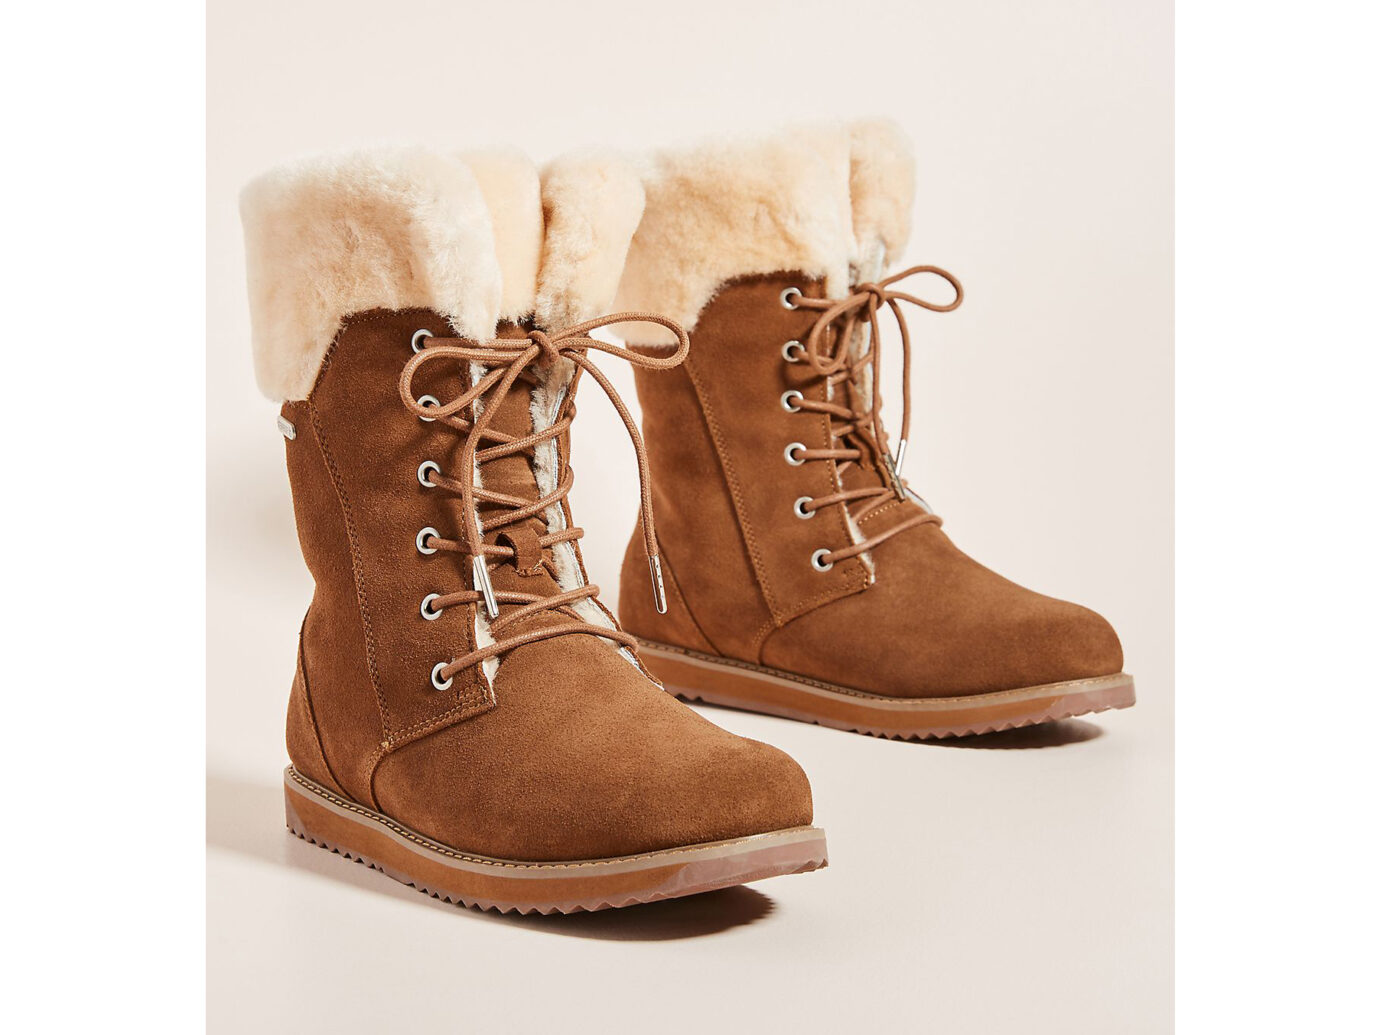 Ladies Winter Boots Flat Comfy Women Ankle Snow Faux Fur Suede Shoes US Size5-11 